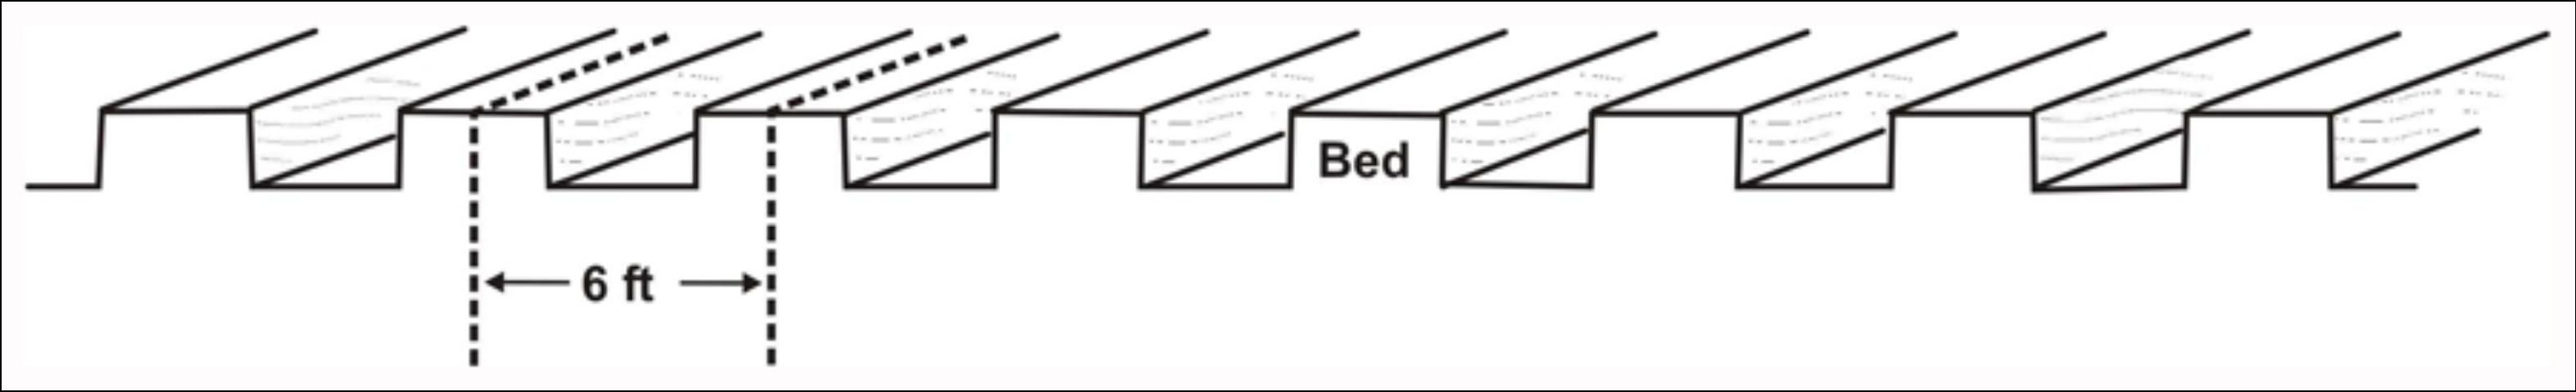 Figure 2. Uniform bed spacing pattern across a field.